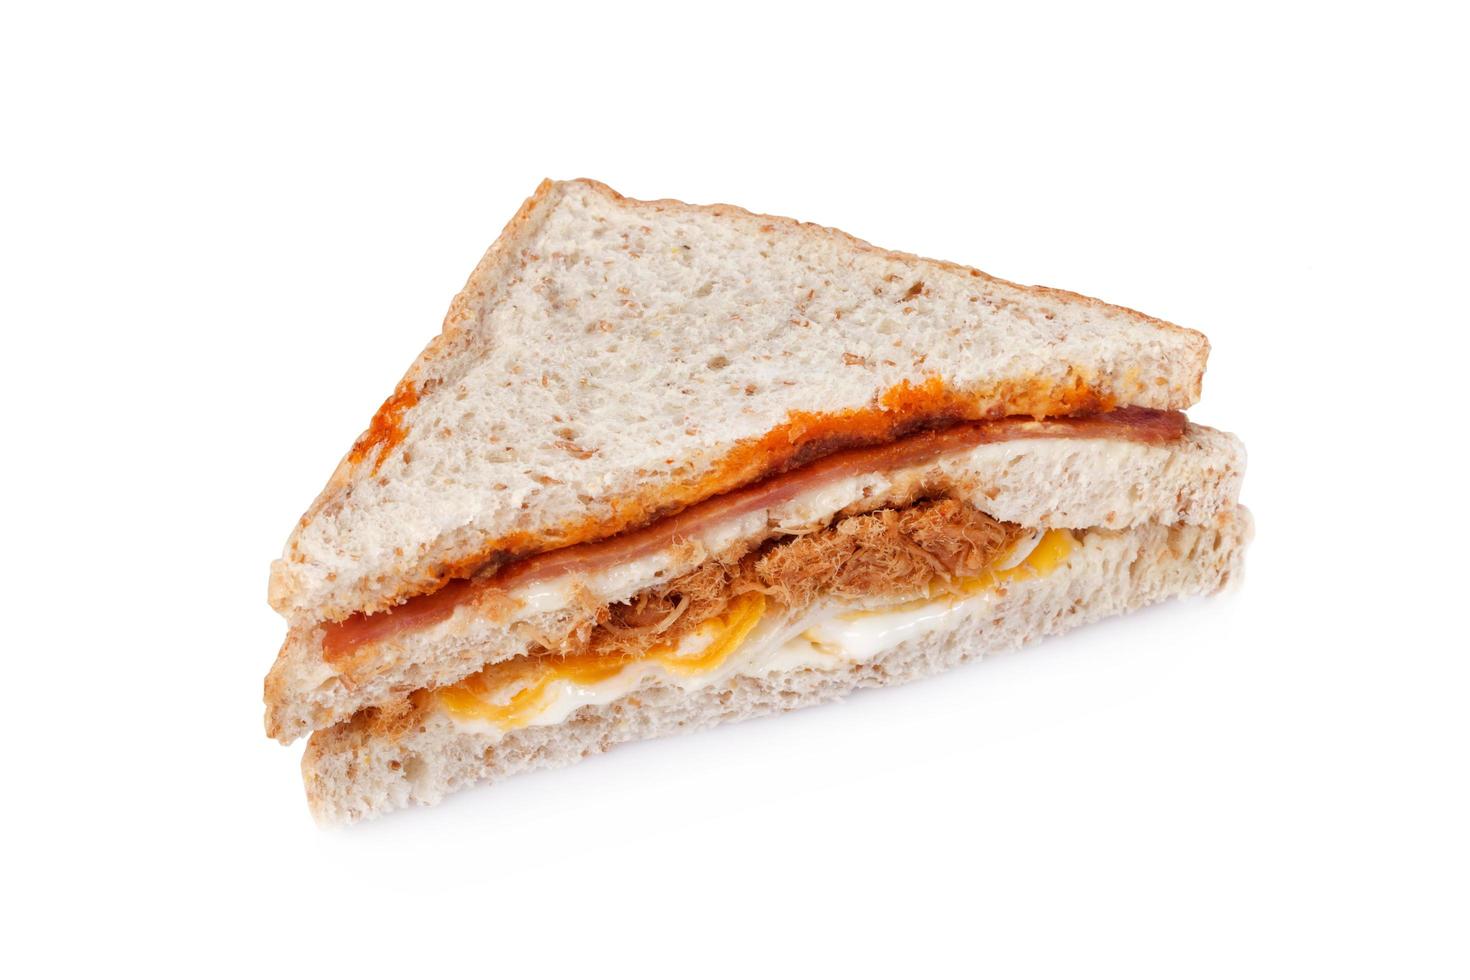 sandwich on white photo